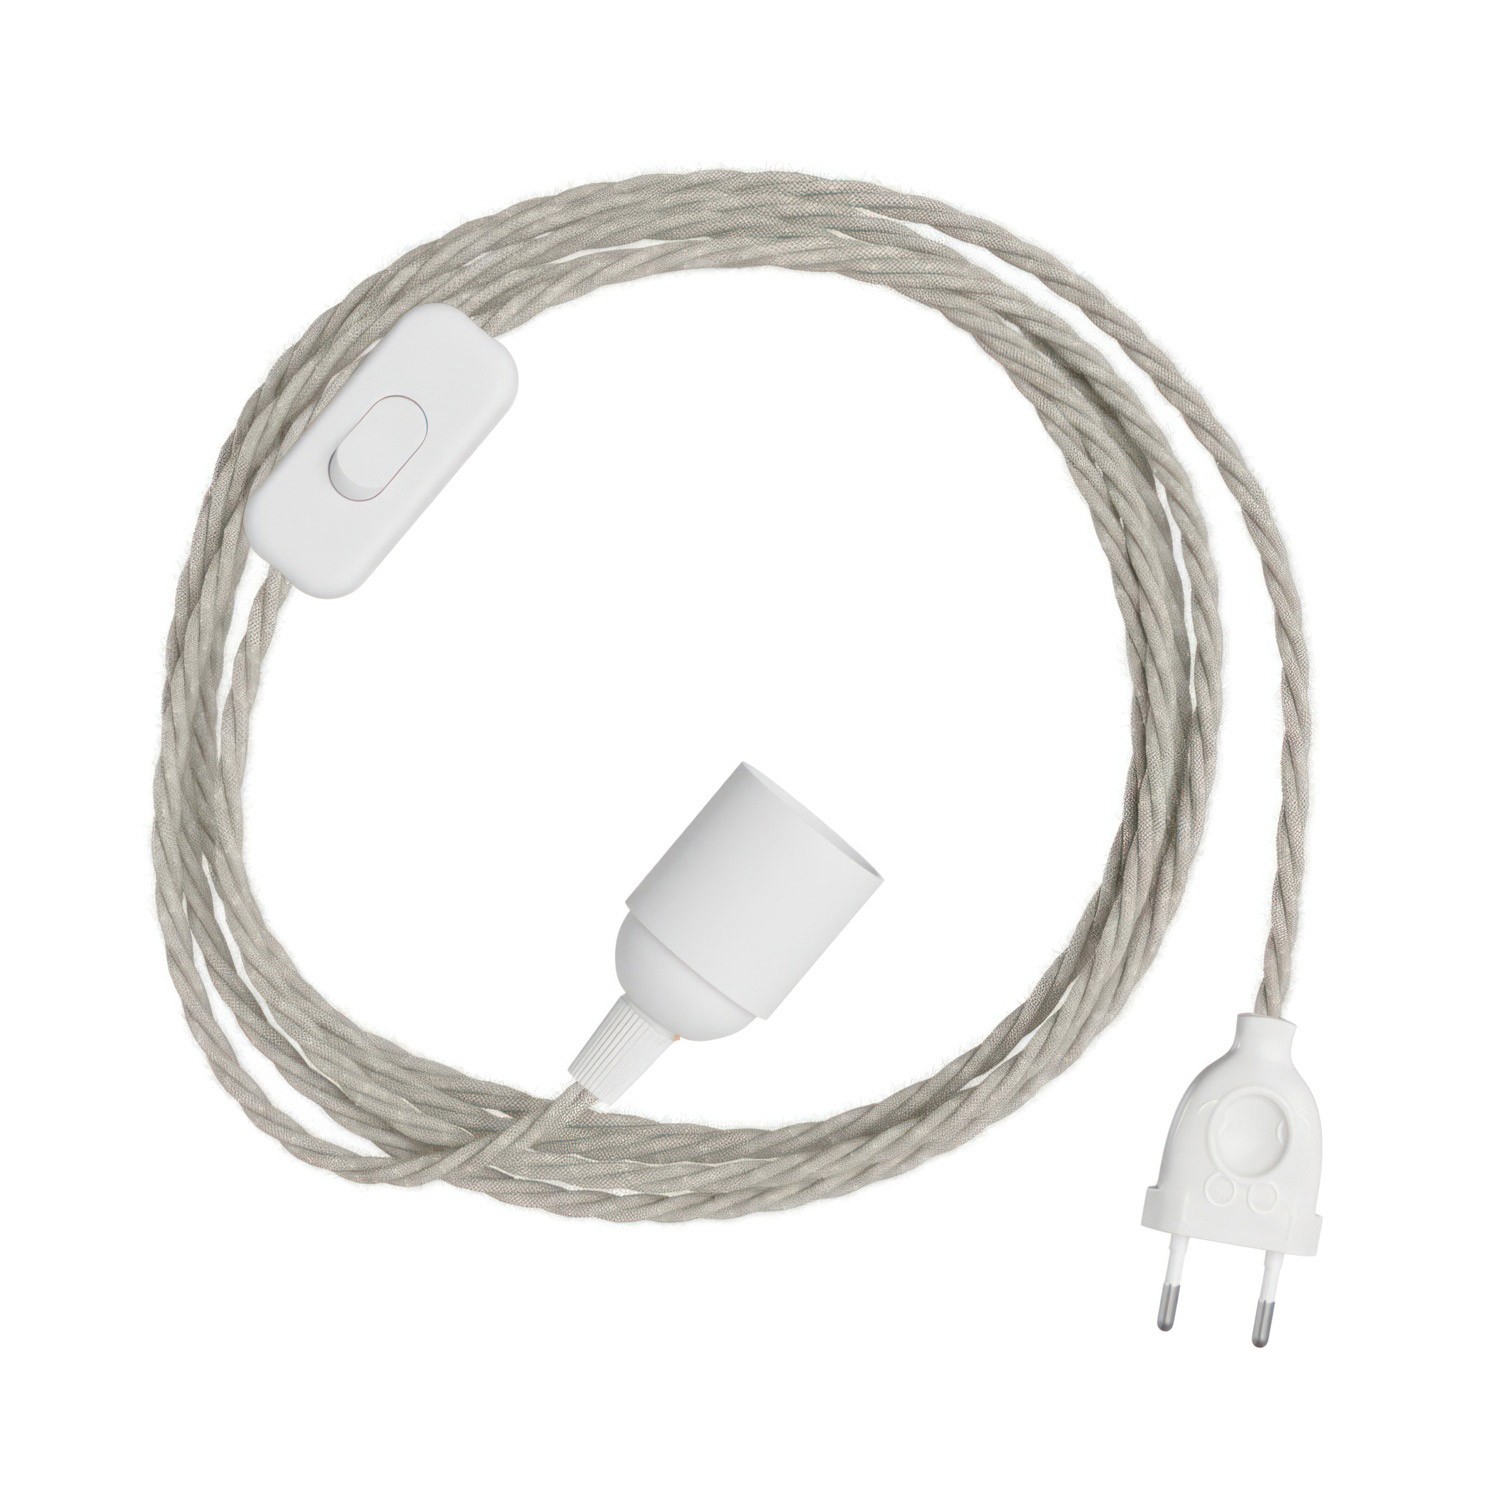 SnakeBis Twisted - Leuchtenzuleitung mit Lampenfassung und geflochtenem Textilkabel